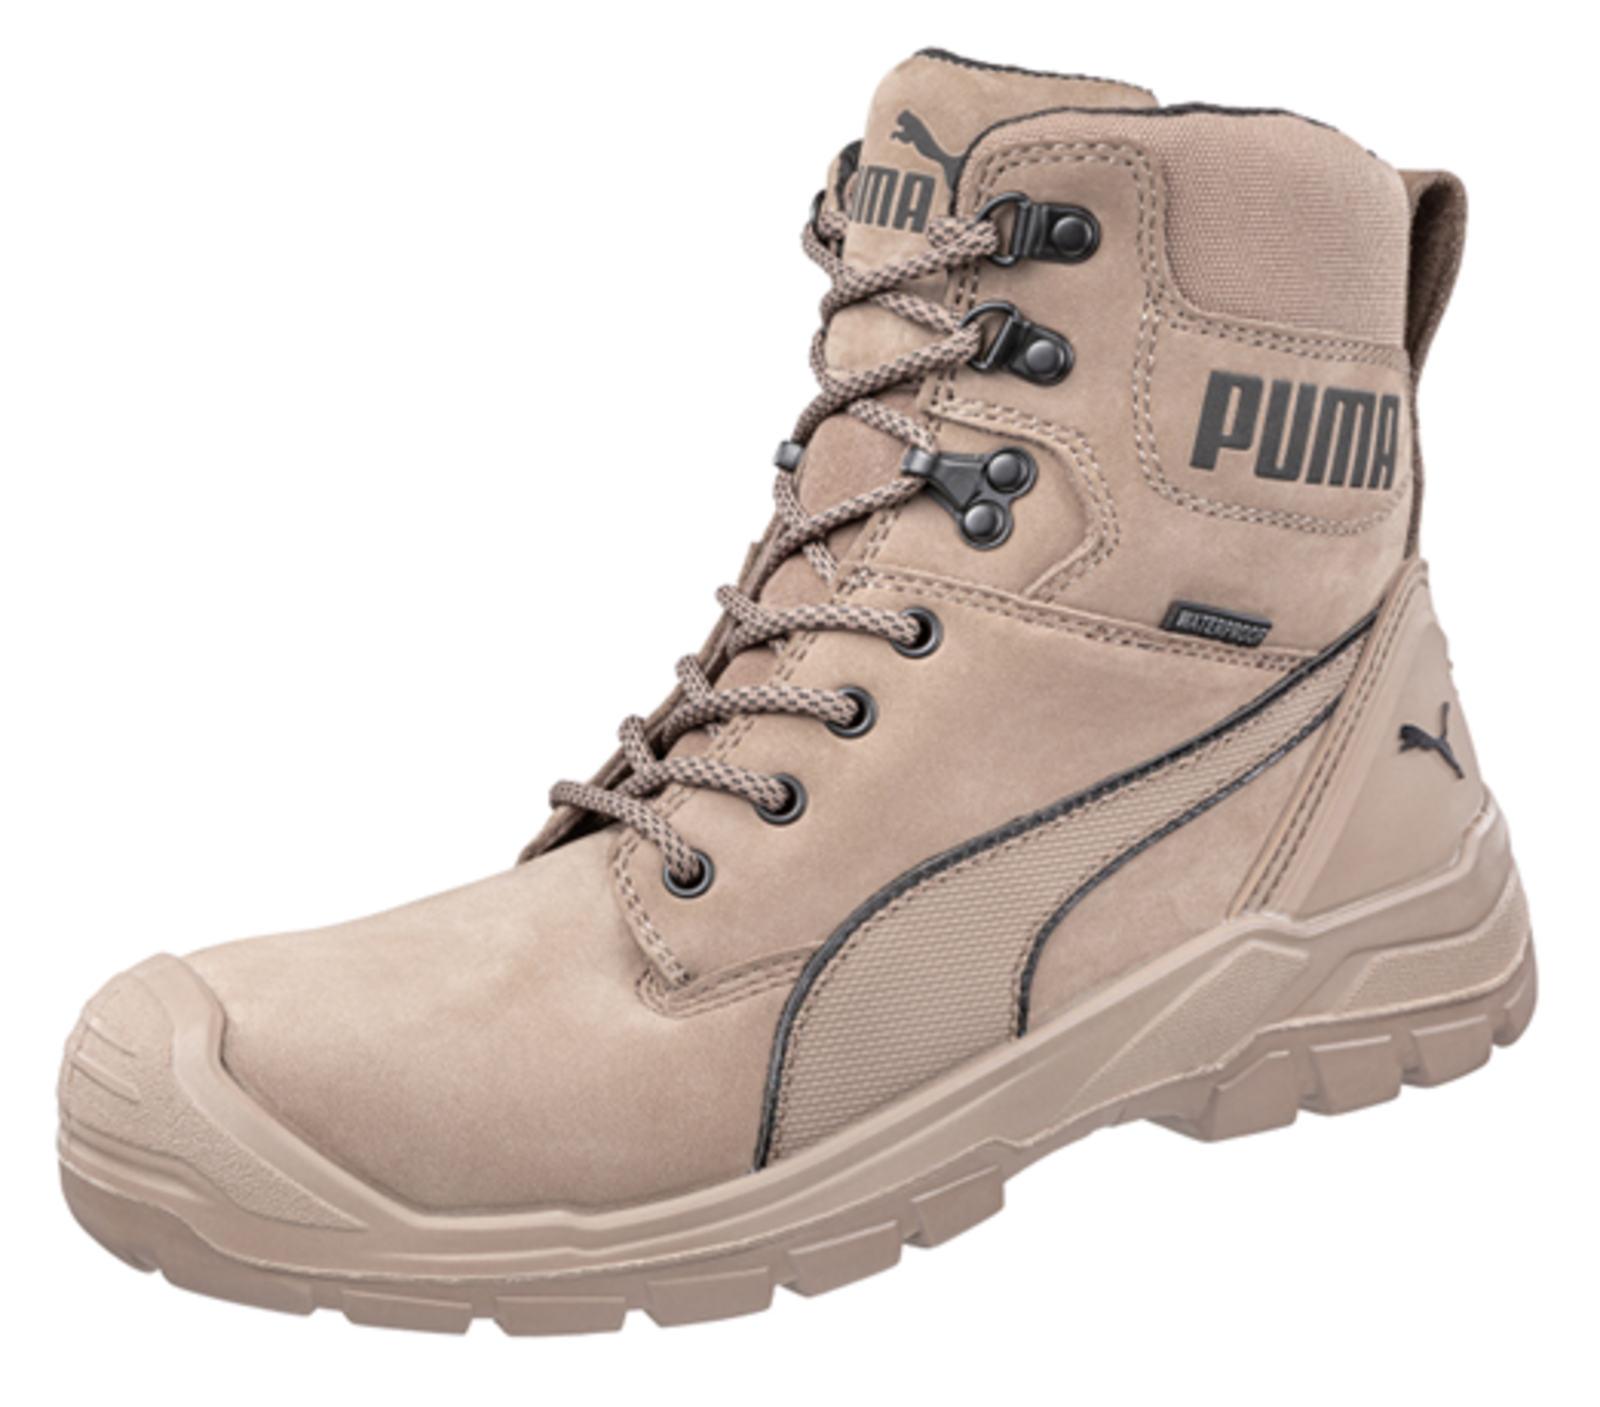 Bezpečnostná obuv Puma Conquest Stone S3 - veľkosť: 40, farba: svetlohnedá